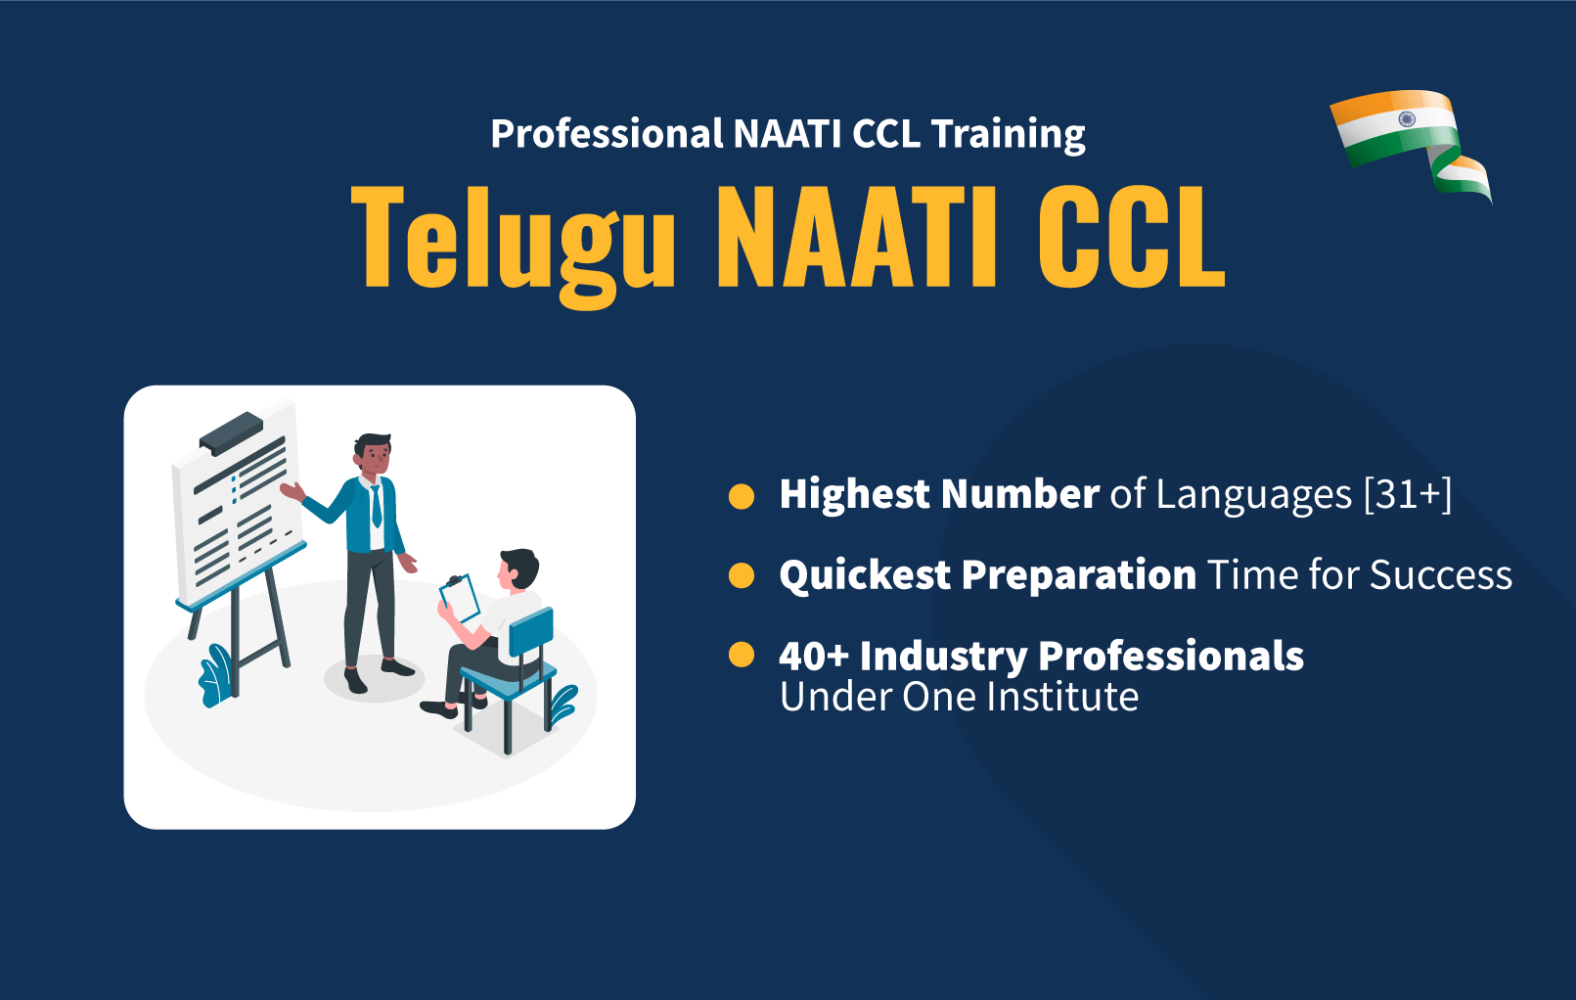 Telugu NAATI CCL image